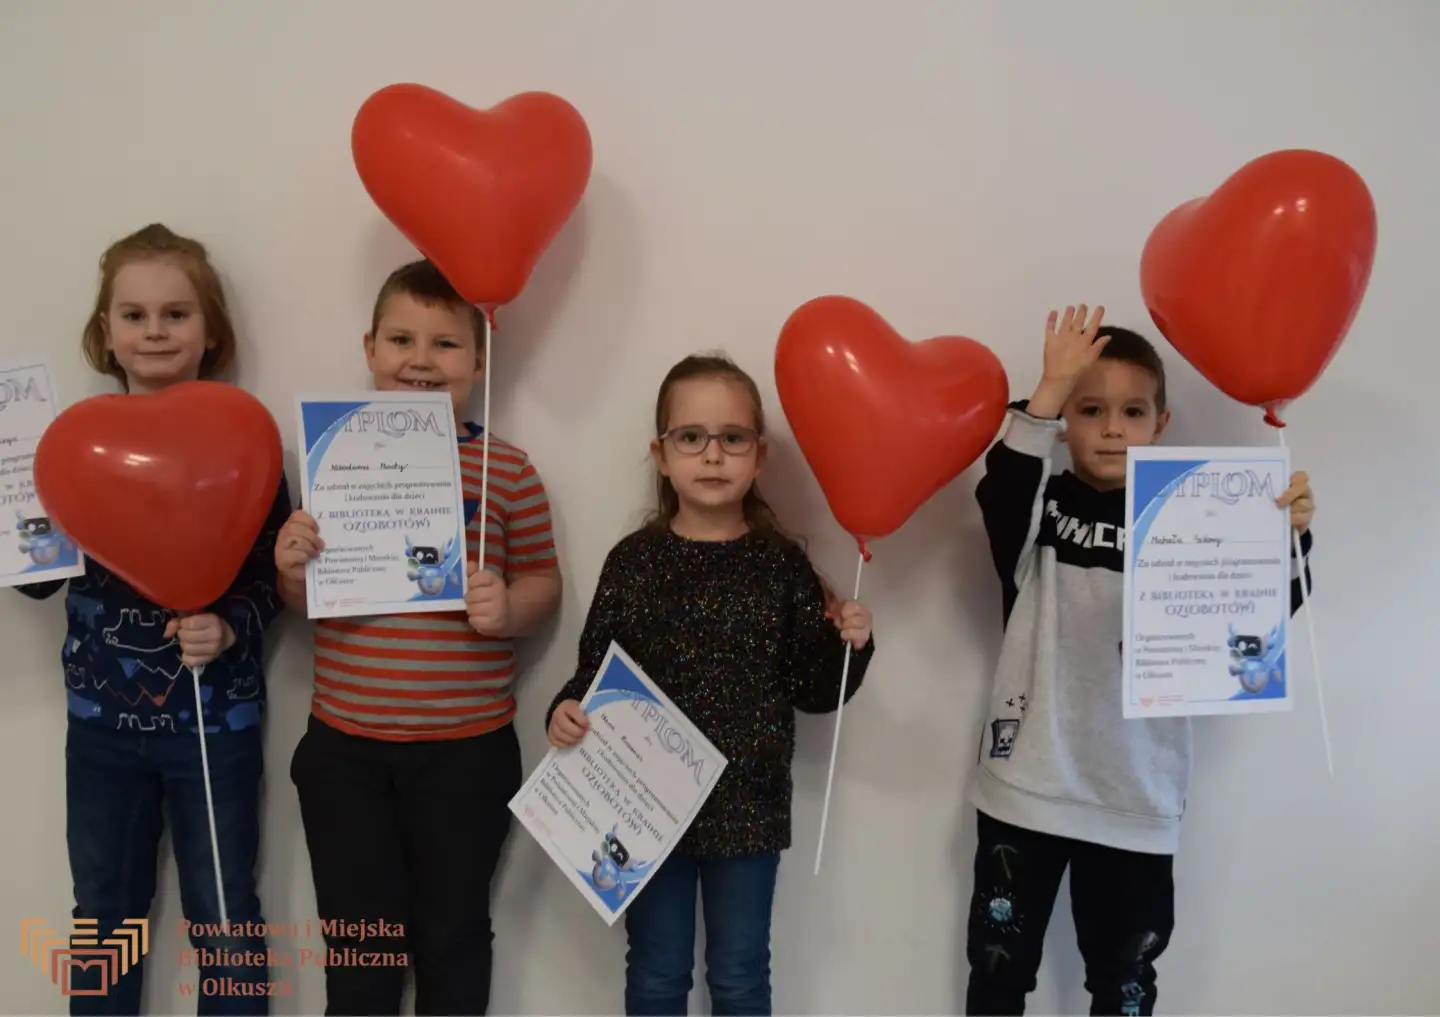 Grupa dzieci stoi przy ścianie i pozuje do wspólnego zdjęcia. W rękach trzymają balony w kształcie serca oraz dyplomy.